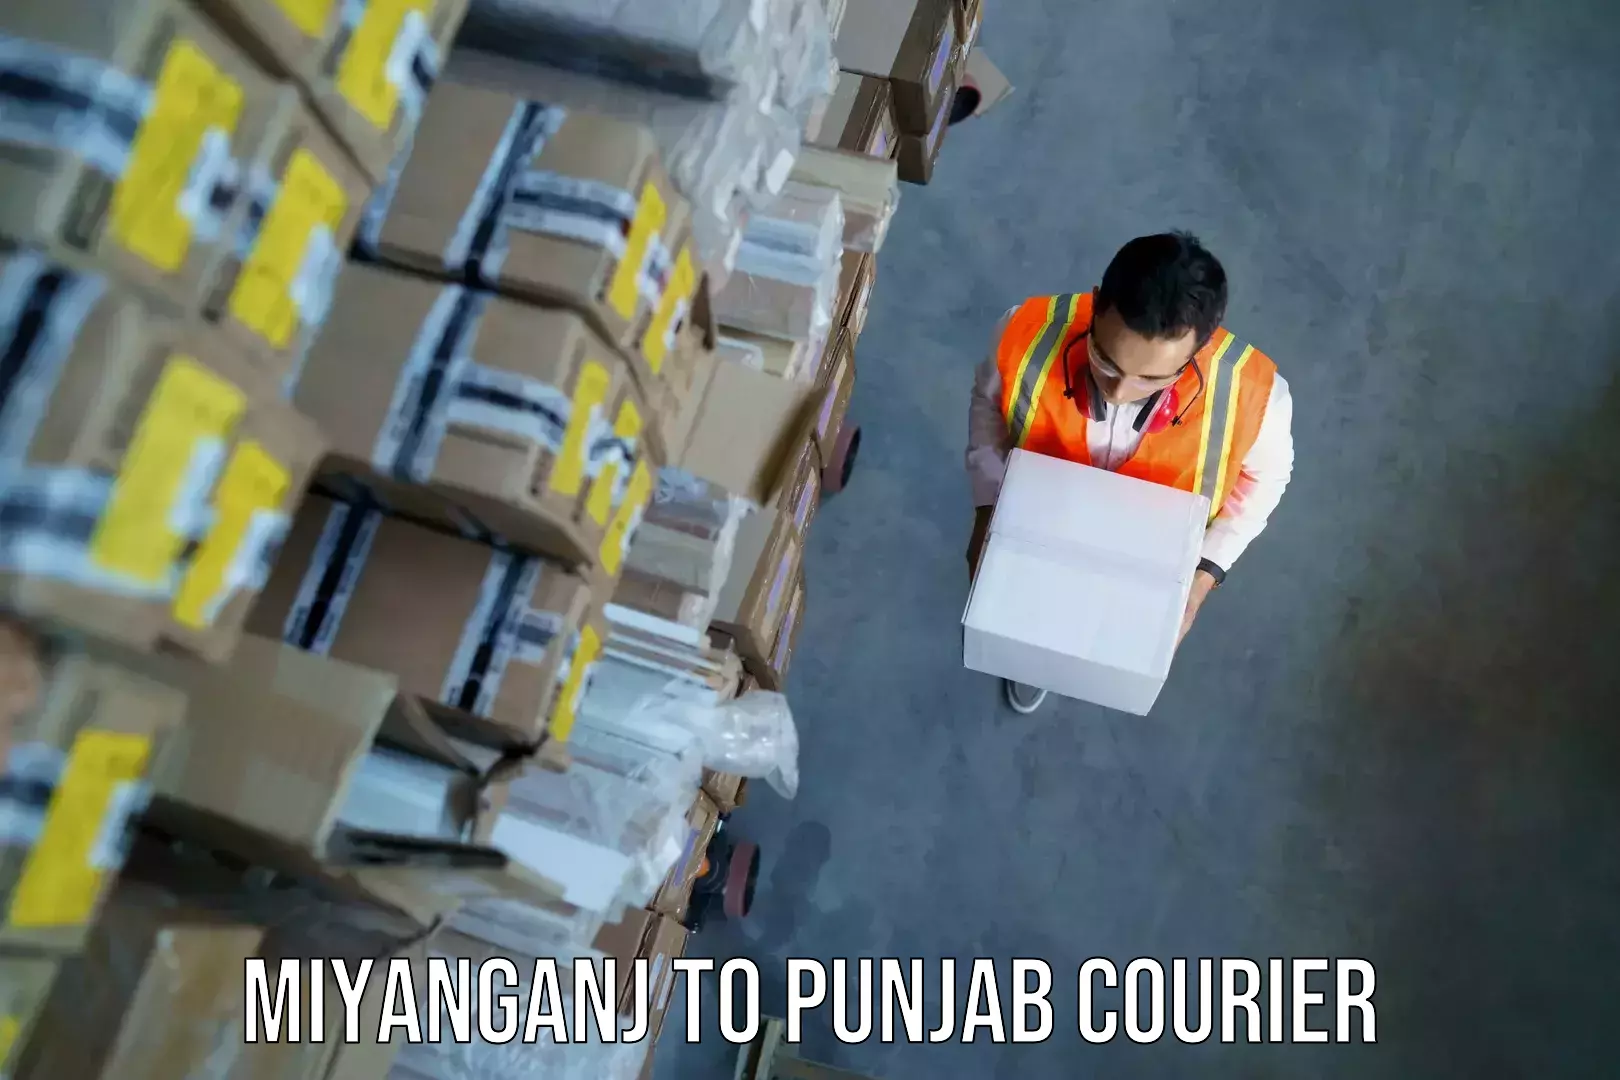 Baggage shipping schedule Miyanganj to Punjab